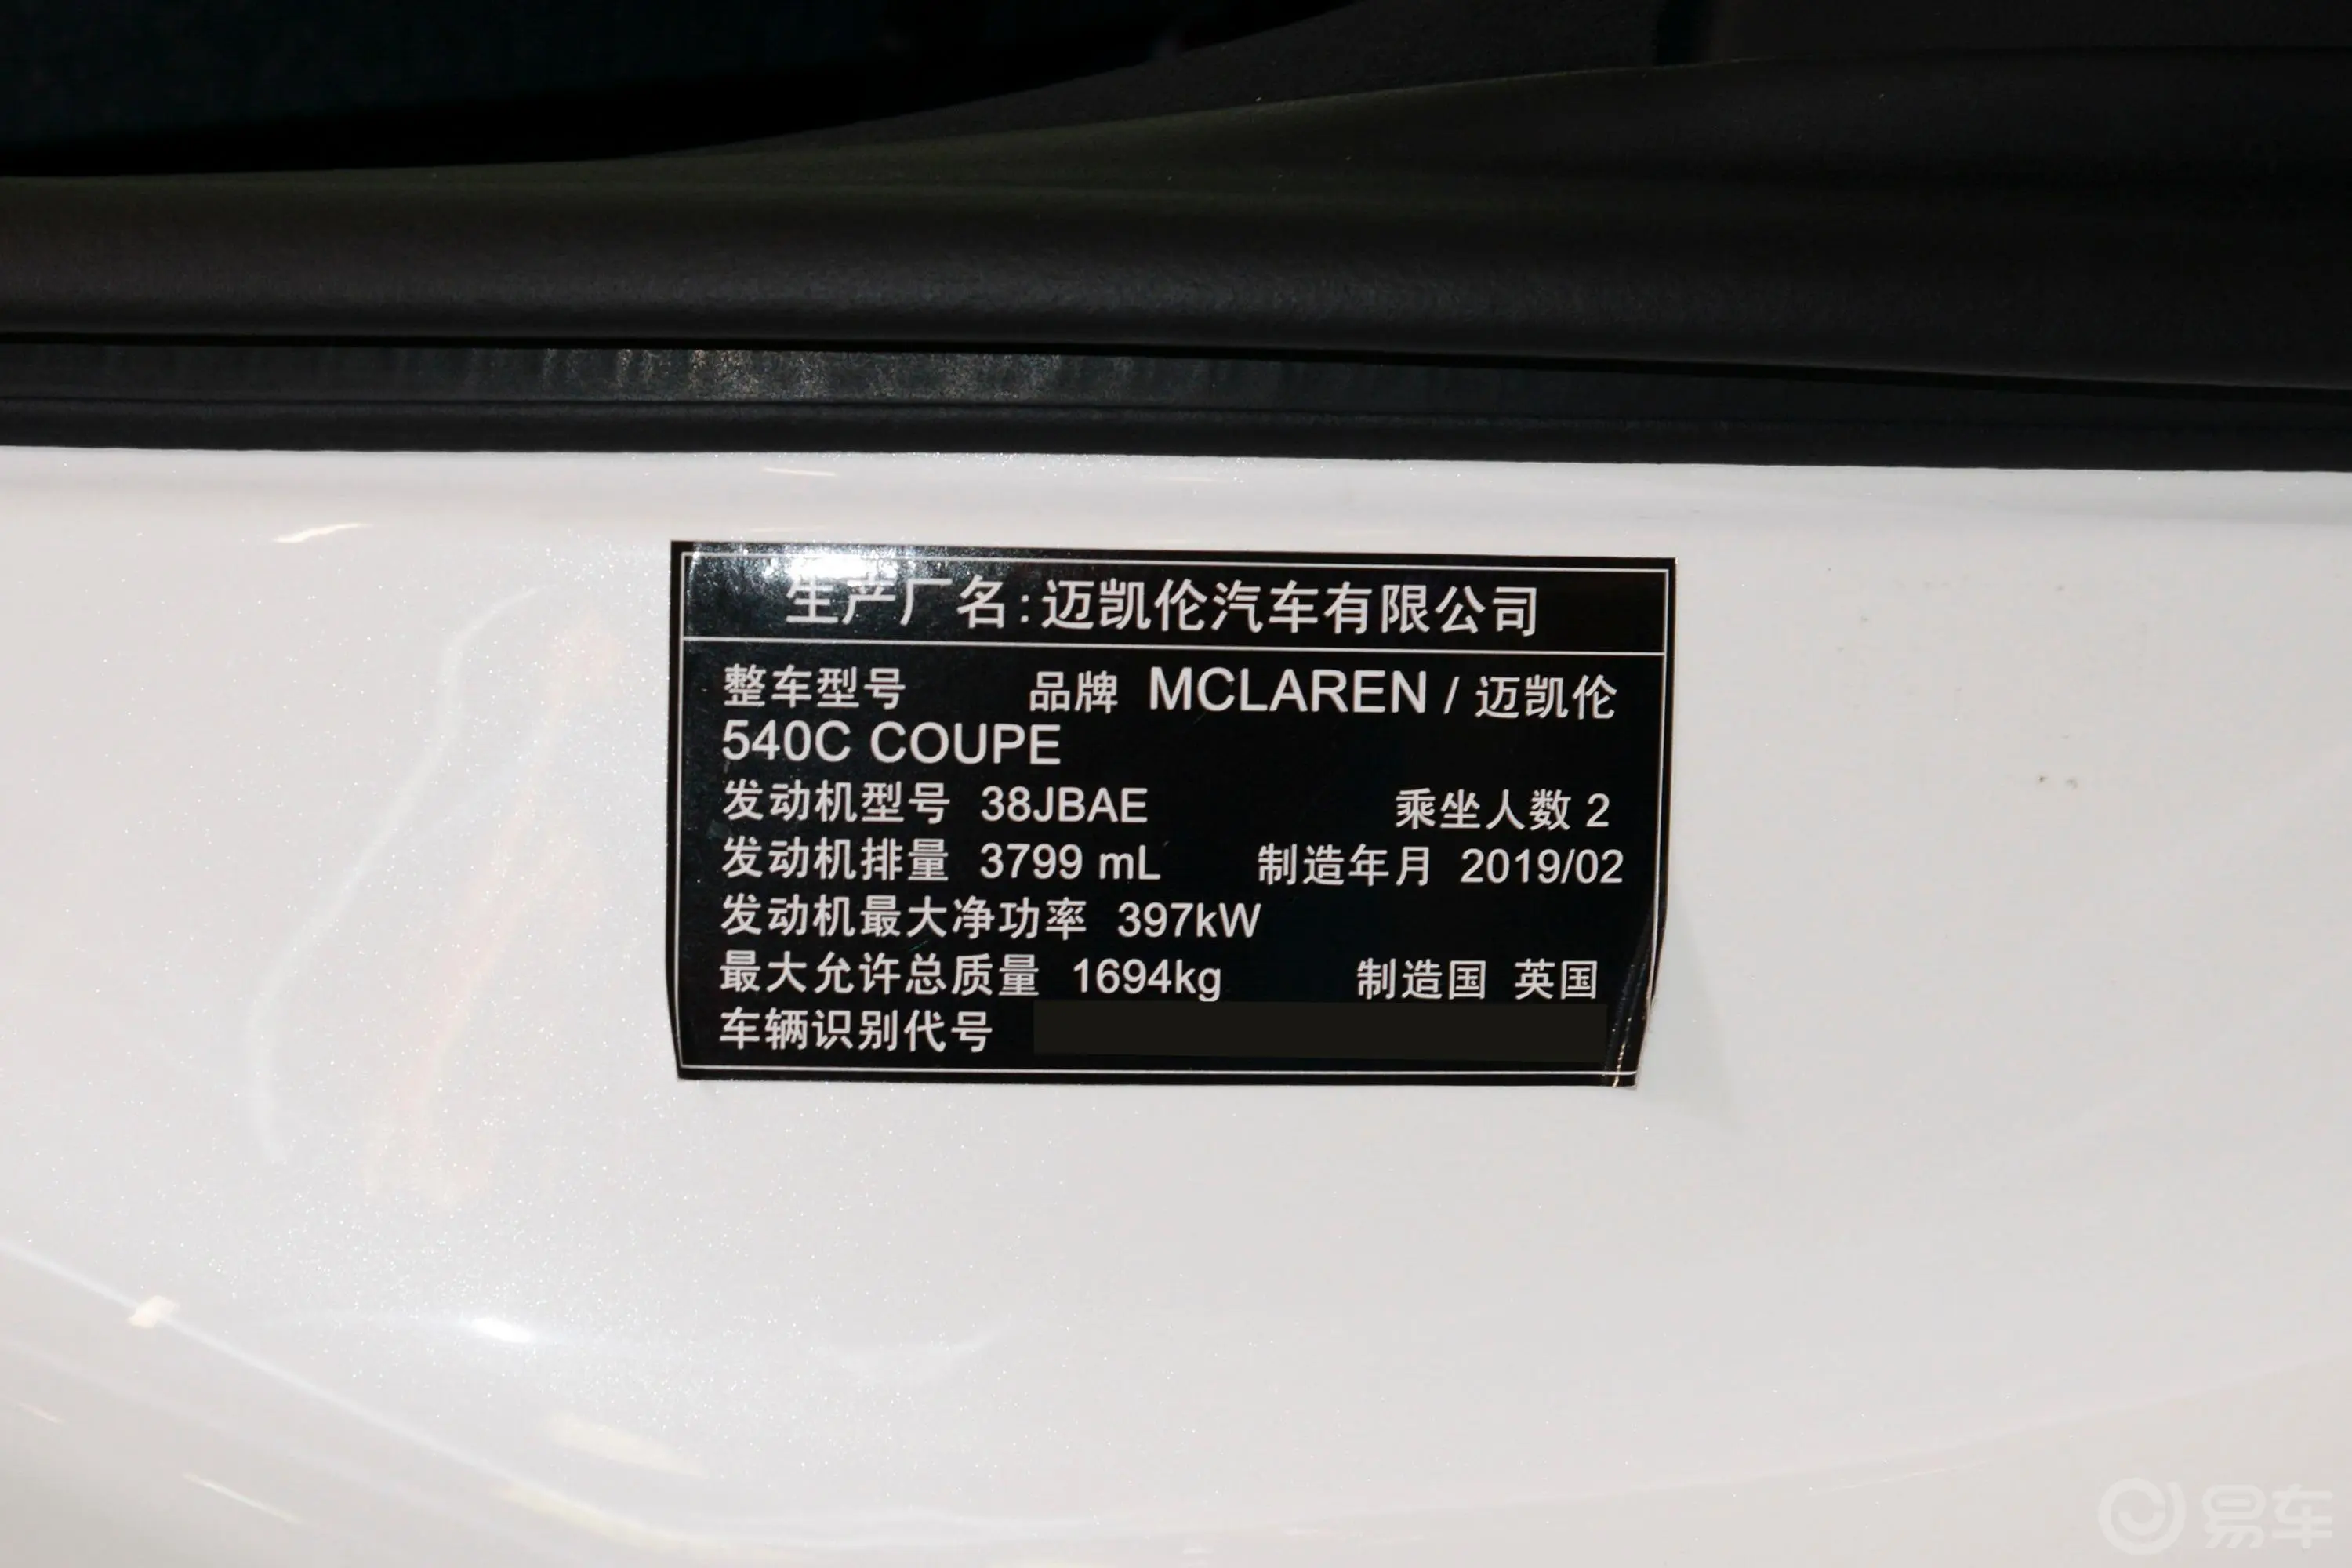 迈凯伦540C3.8T Coupe车辆信息铭牌